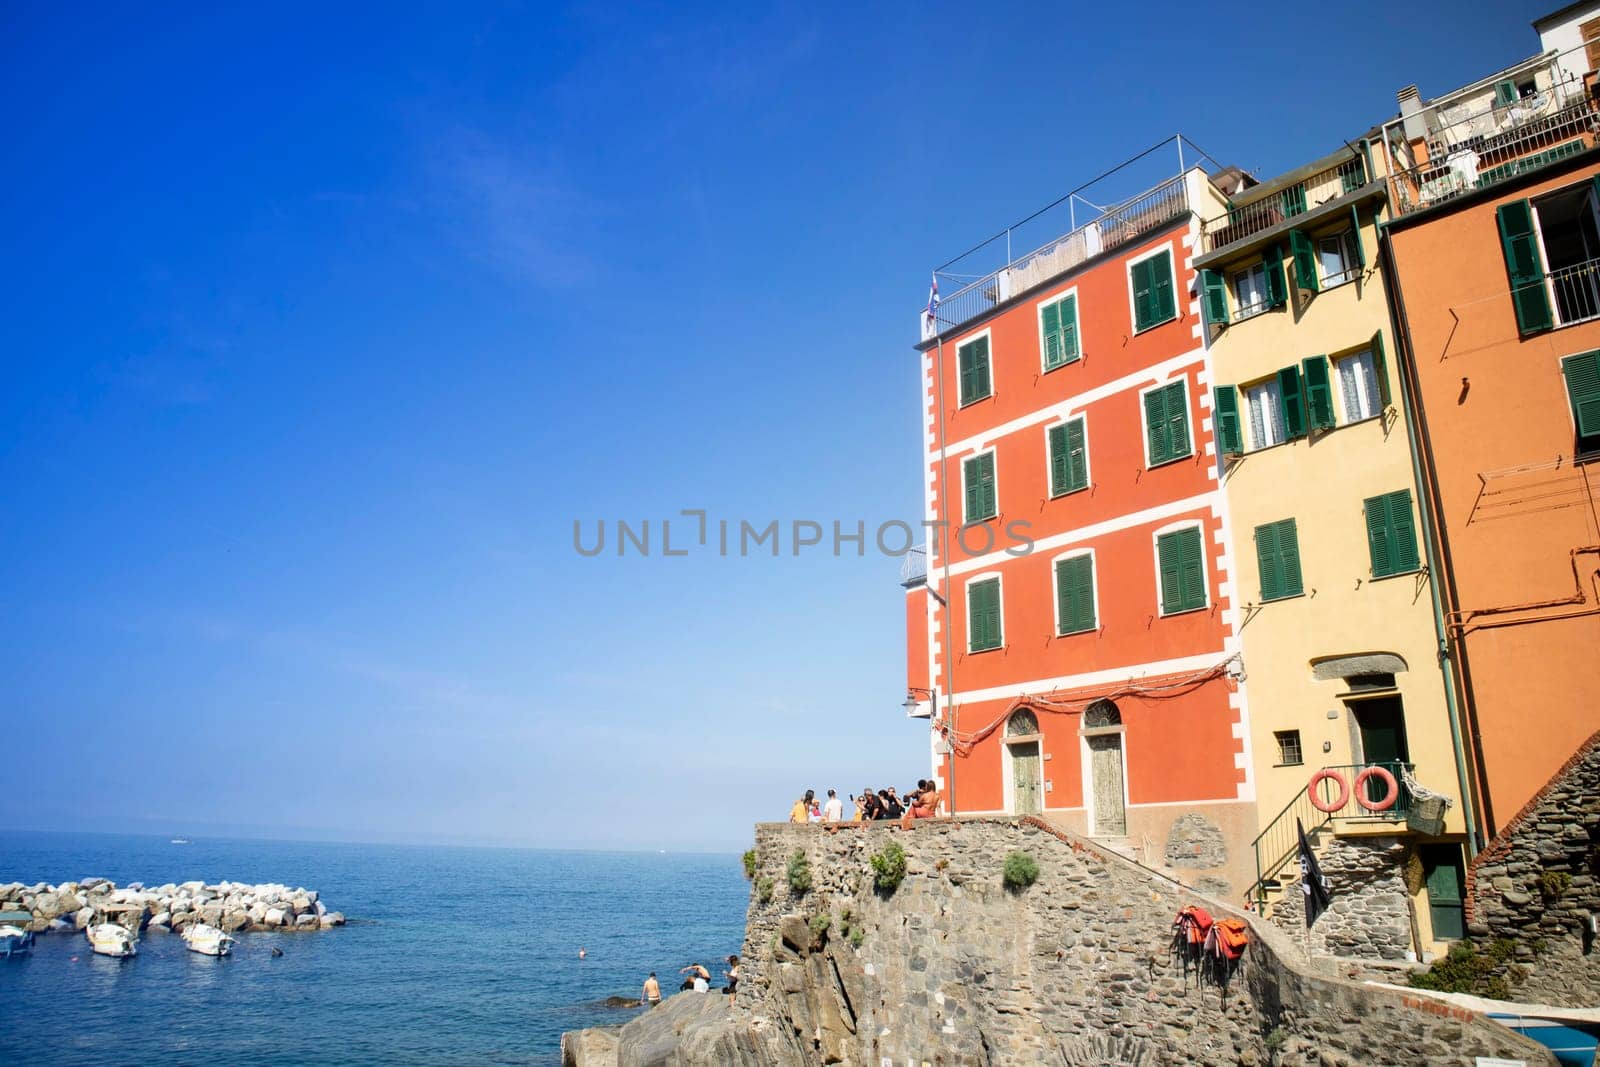 Photographic details of the town of Riomaggiore Liguria  by fotografiche.eu